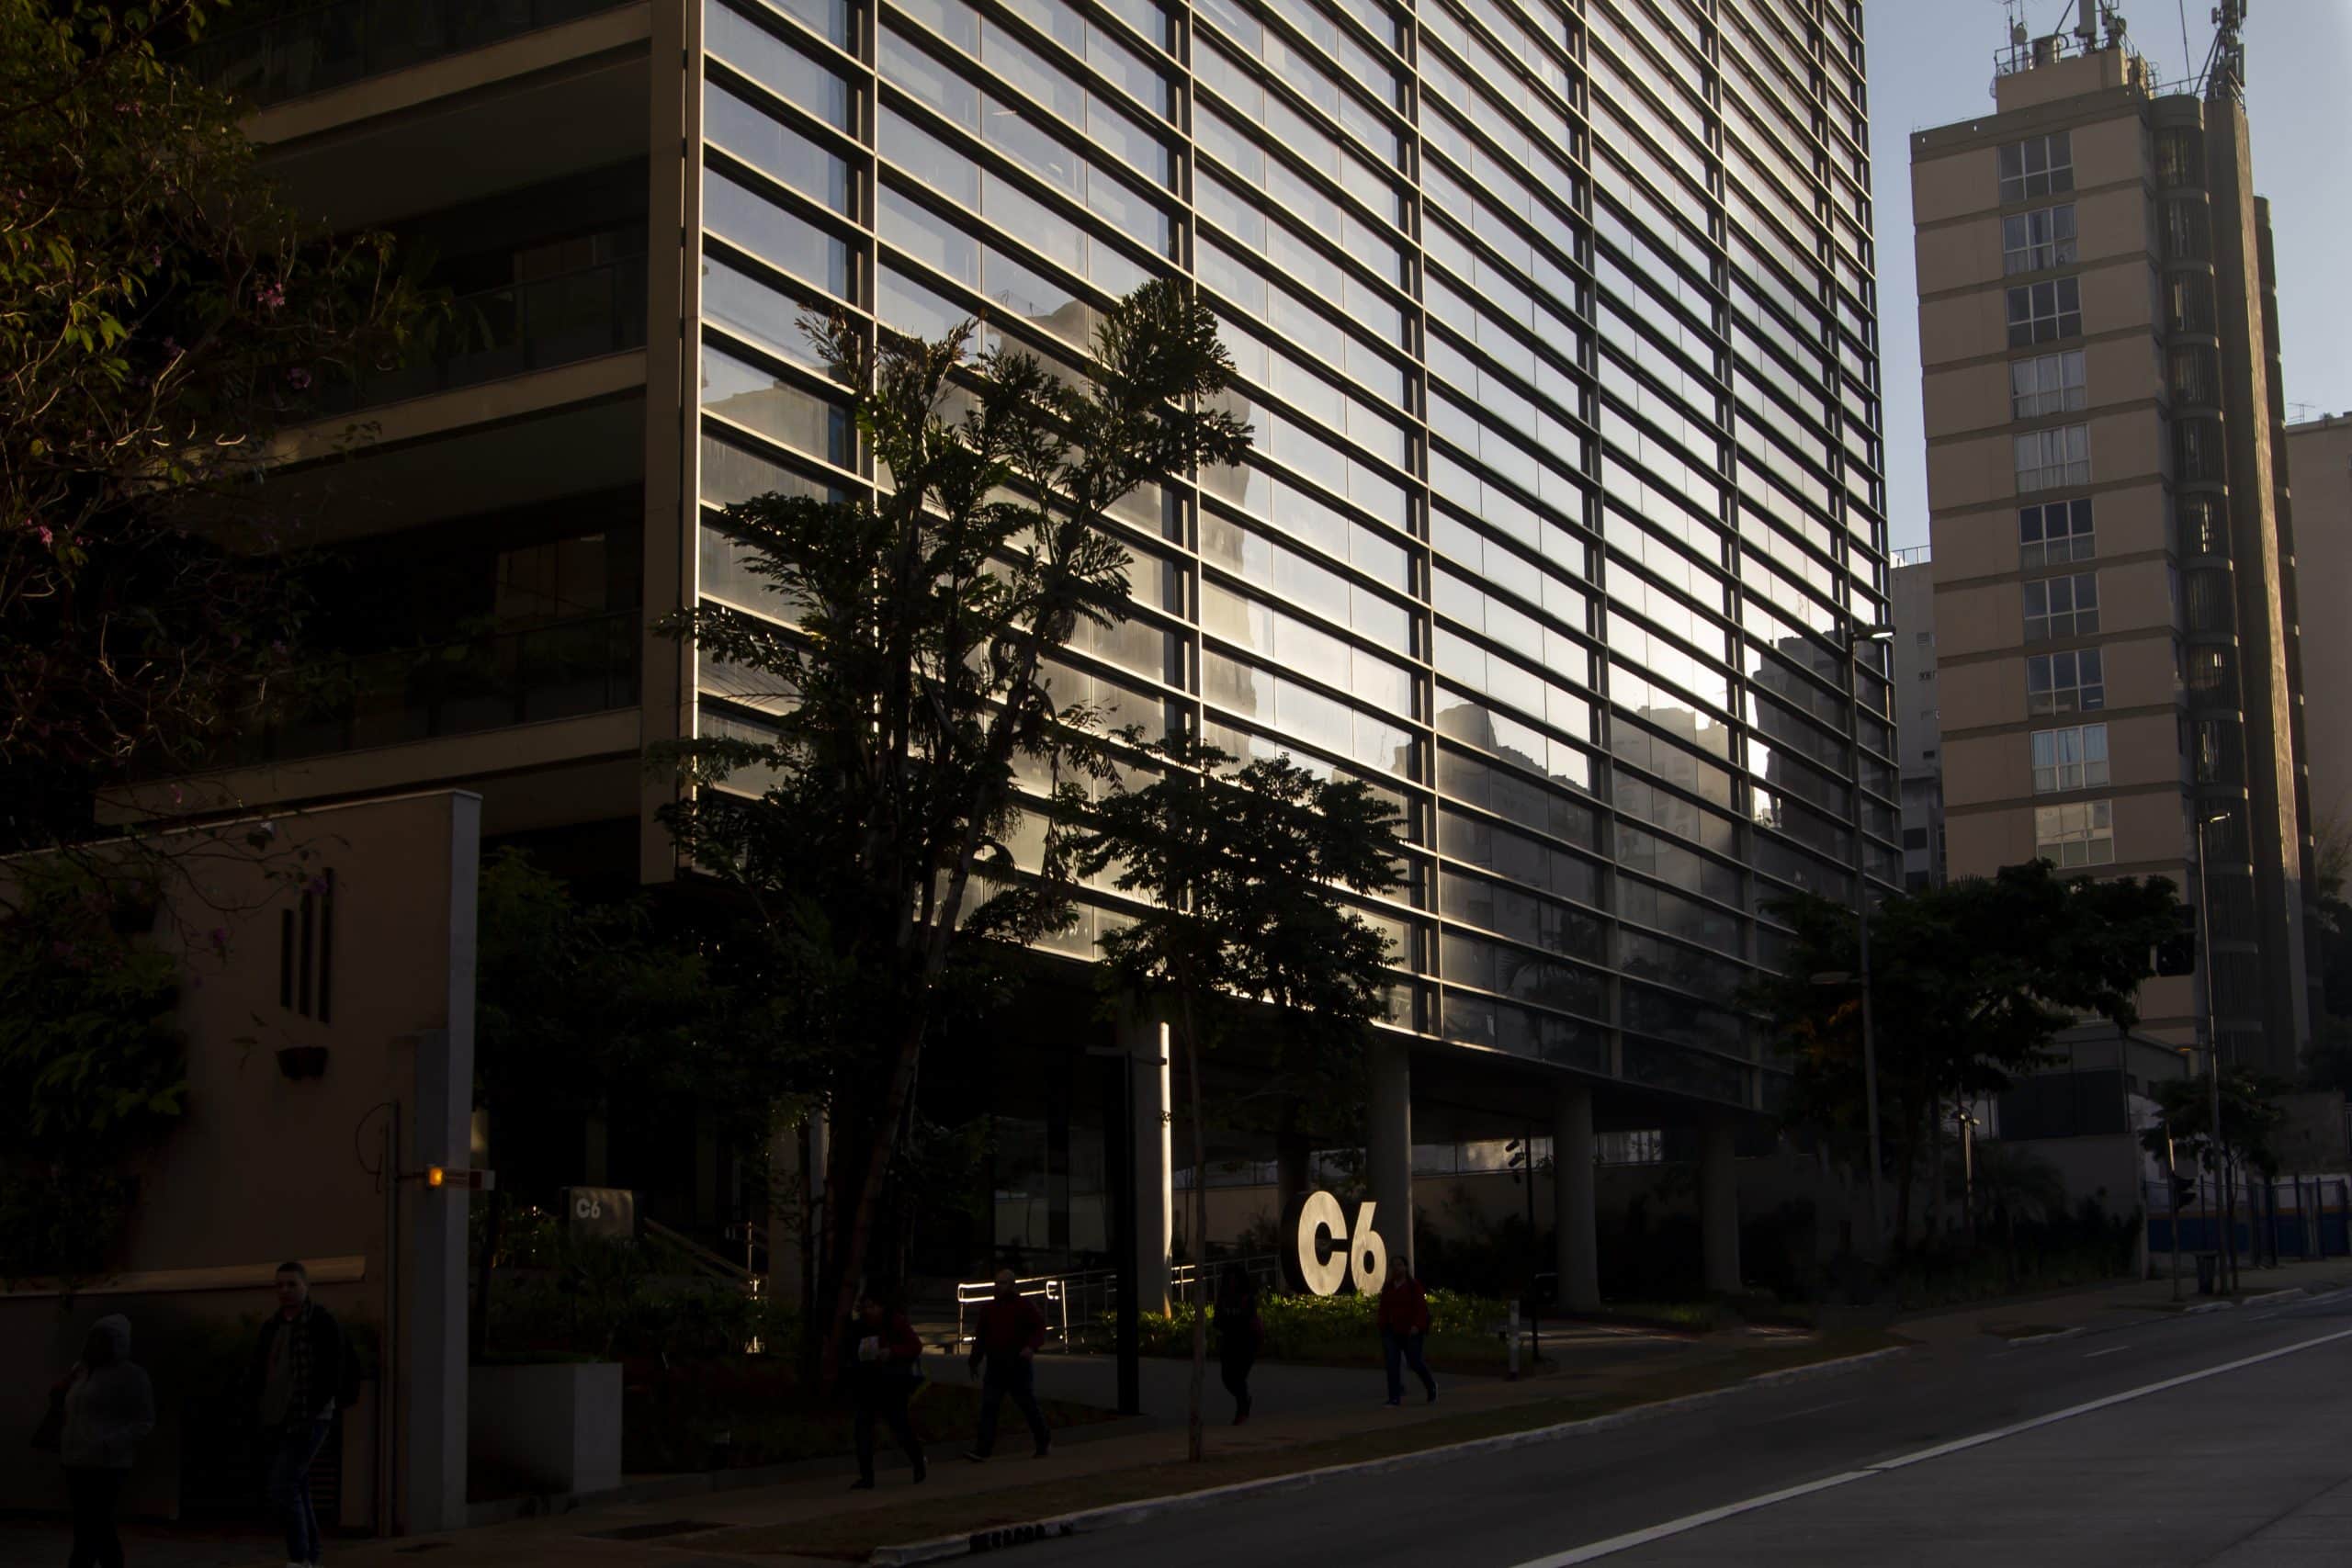 Foto da fachada do prédio do C6 Bank onde se pode ver o logo do banco brilhando com a luz do sol, enquanto algumas pessoas caminham pela calçada